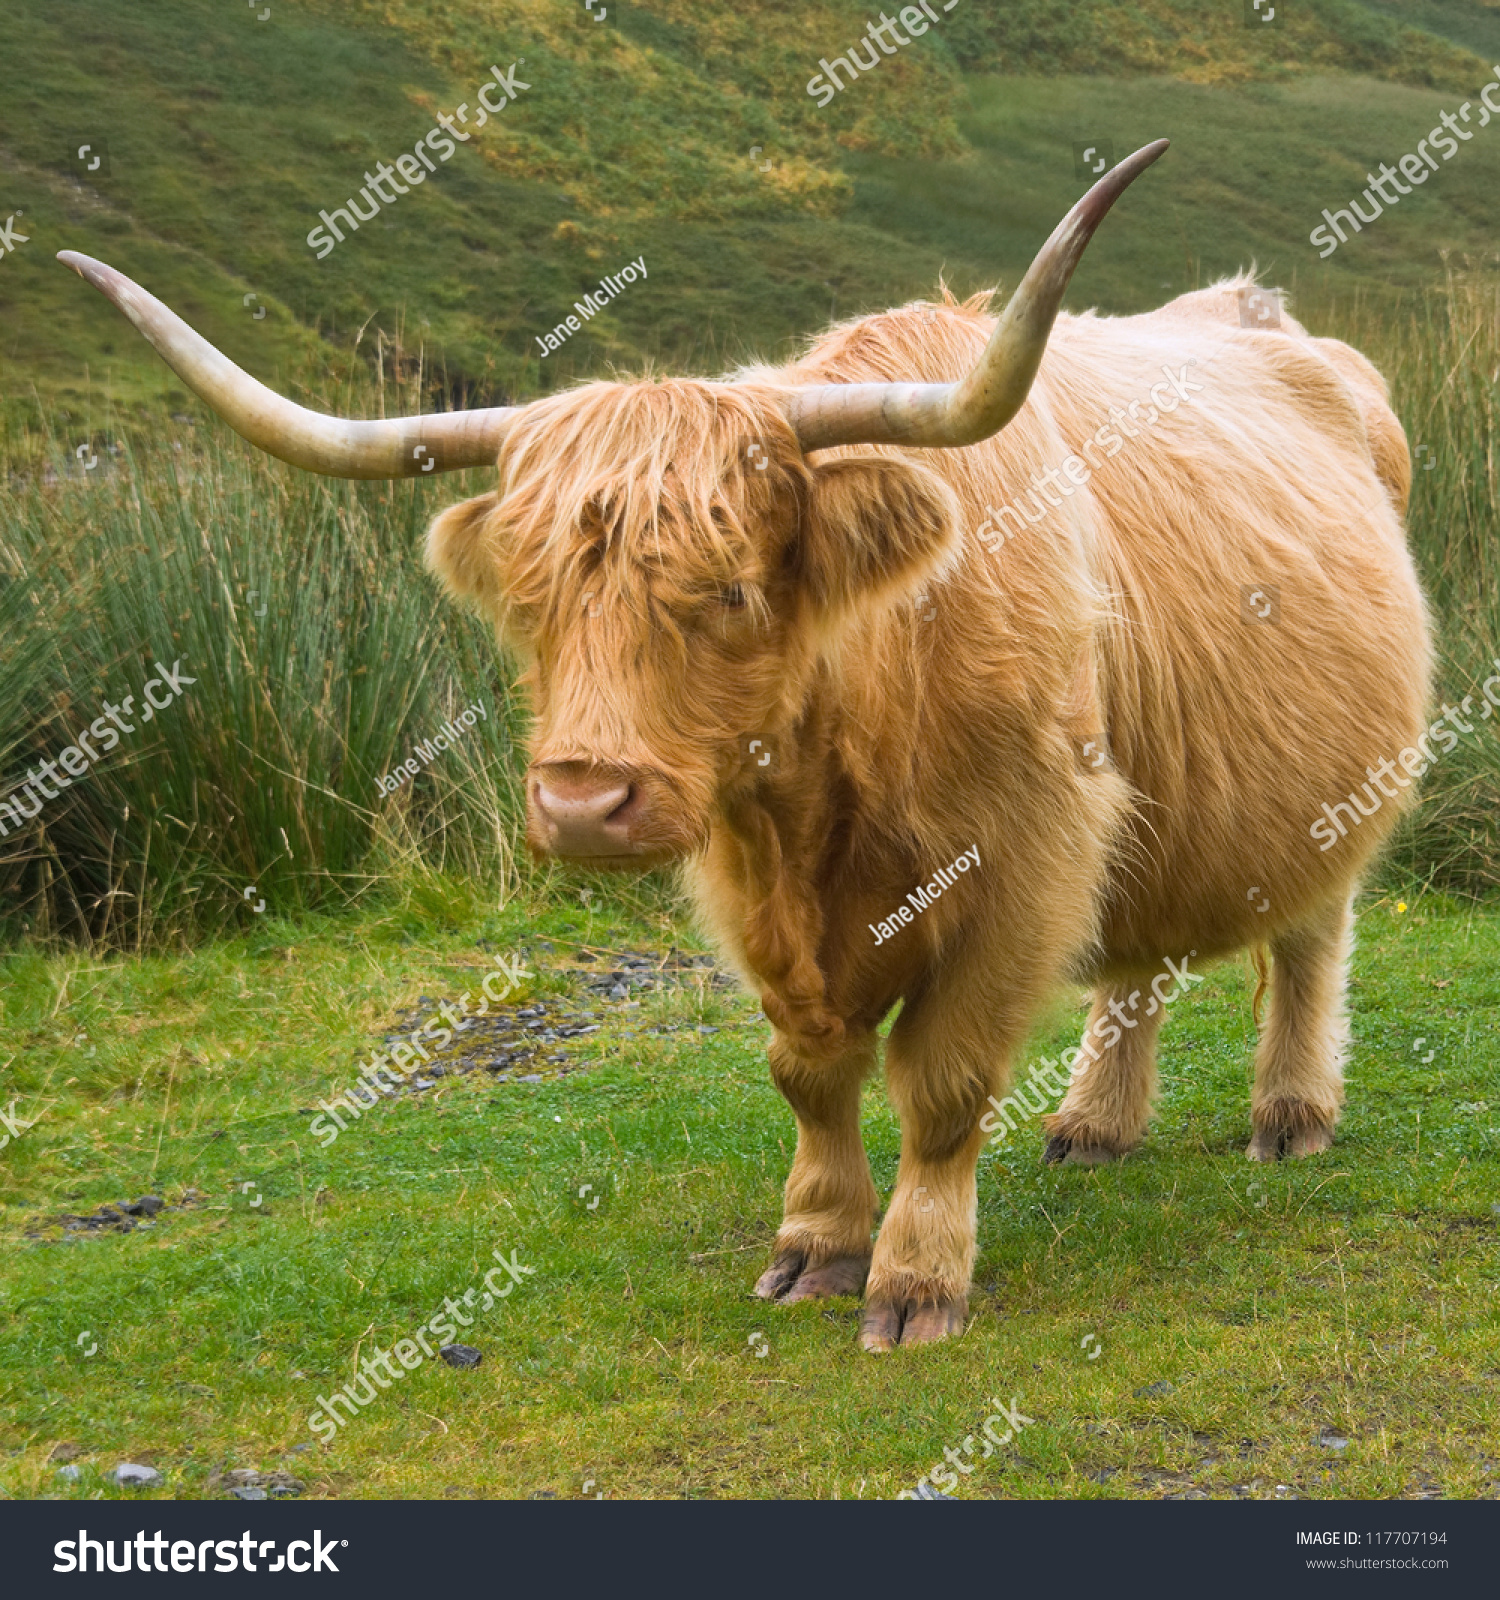 Highland Cow Shaggy Golden Hair Long Stock Photo 117707194 - Shutterstock